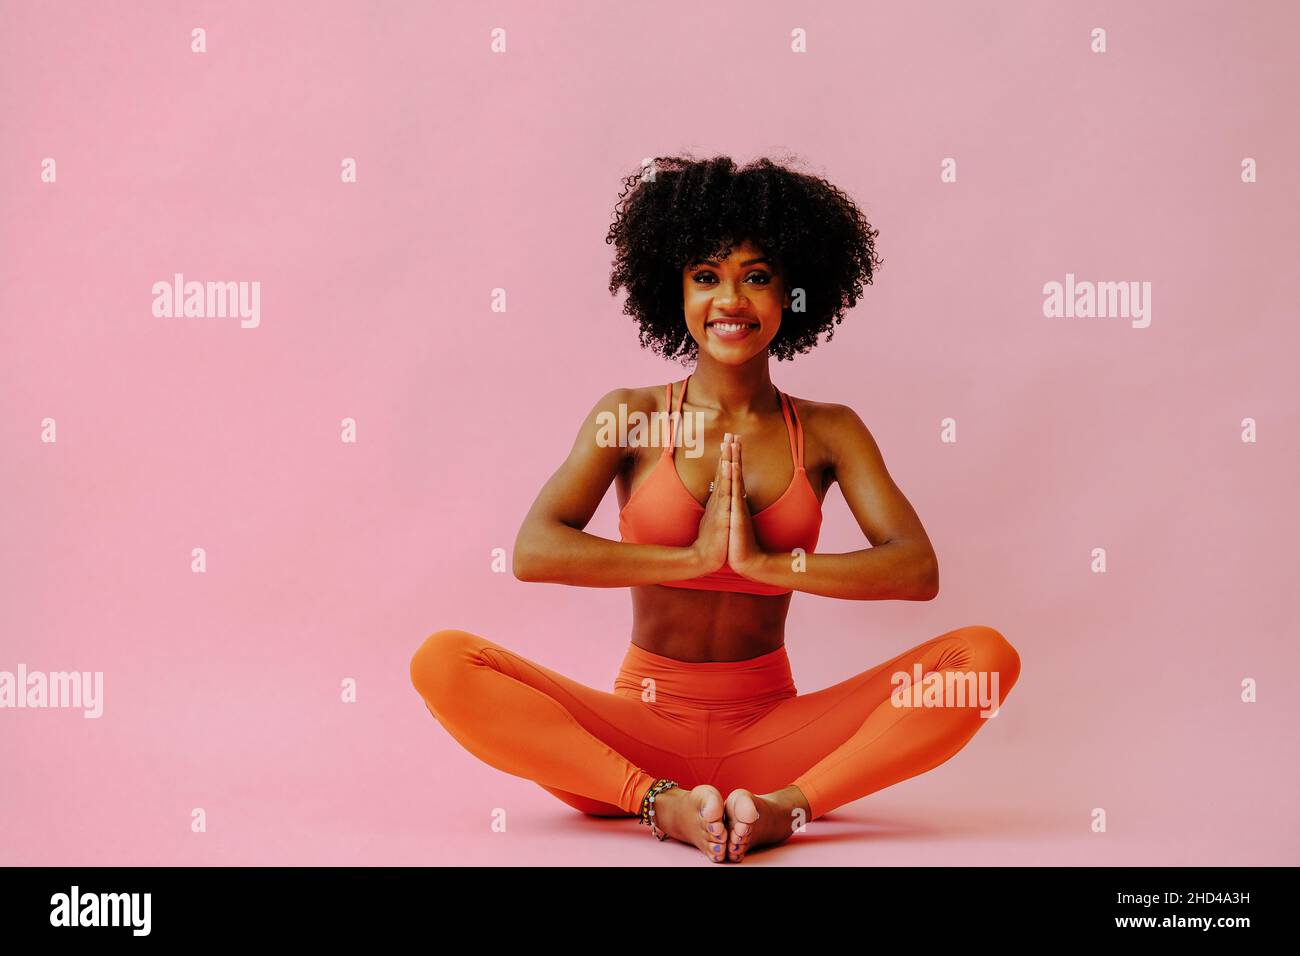 Belle femme afro-américaine méditant dans les tenues de sport sur fond rose Banque D'Images